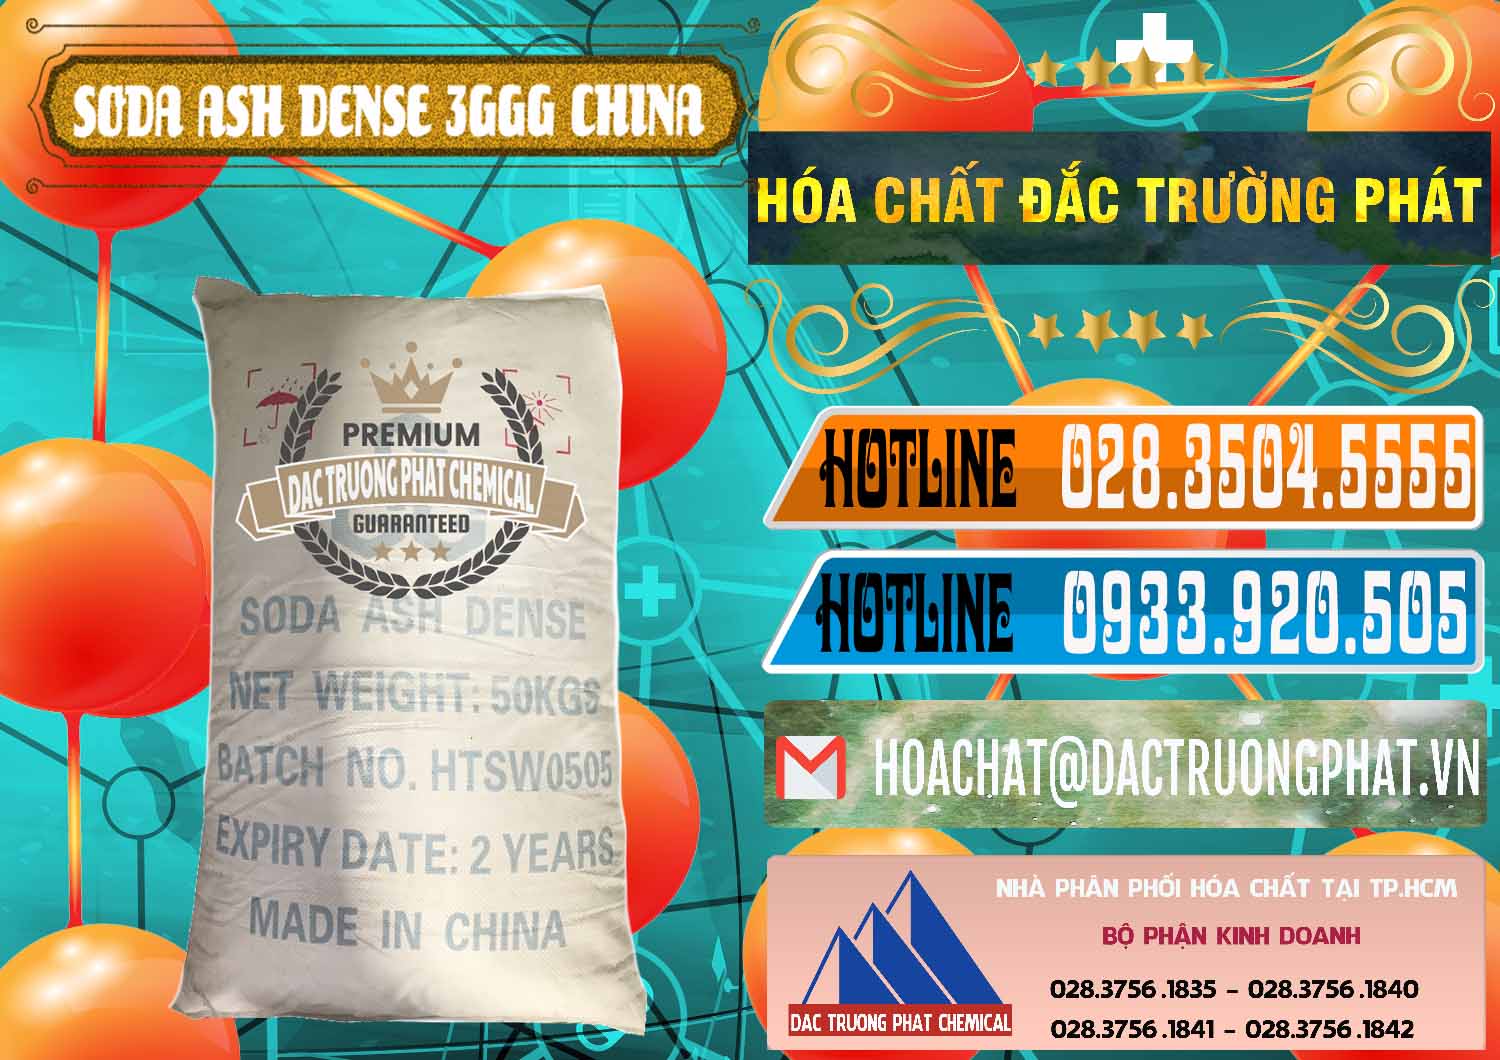 Công ty bán _ phân phối Soda Ash Dense - NA2CO3 3GGG Trung Quốc China - 0335 - Cung cấp ( bán ) hóa chất tại TP.HCM - stmp.net